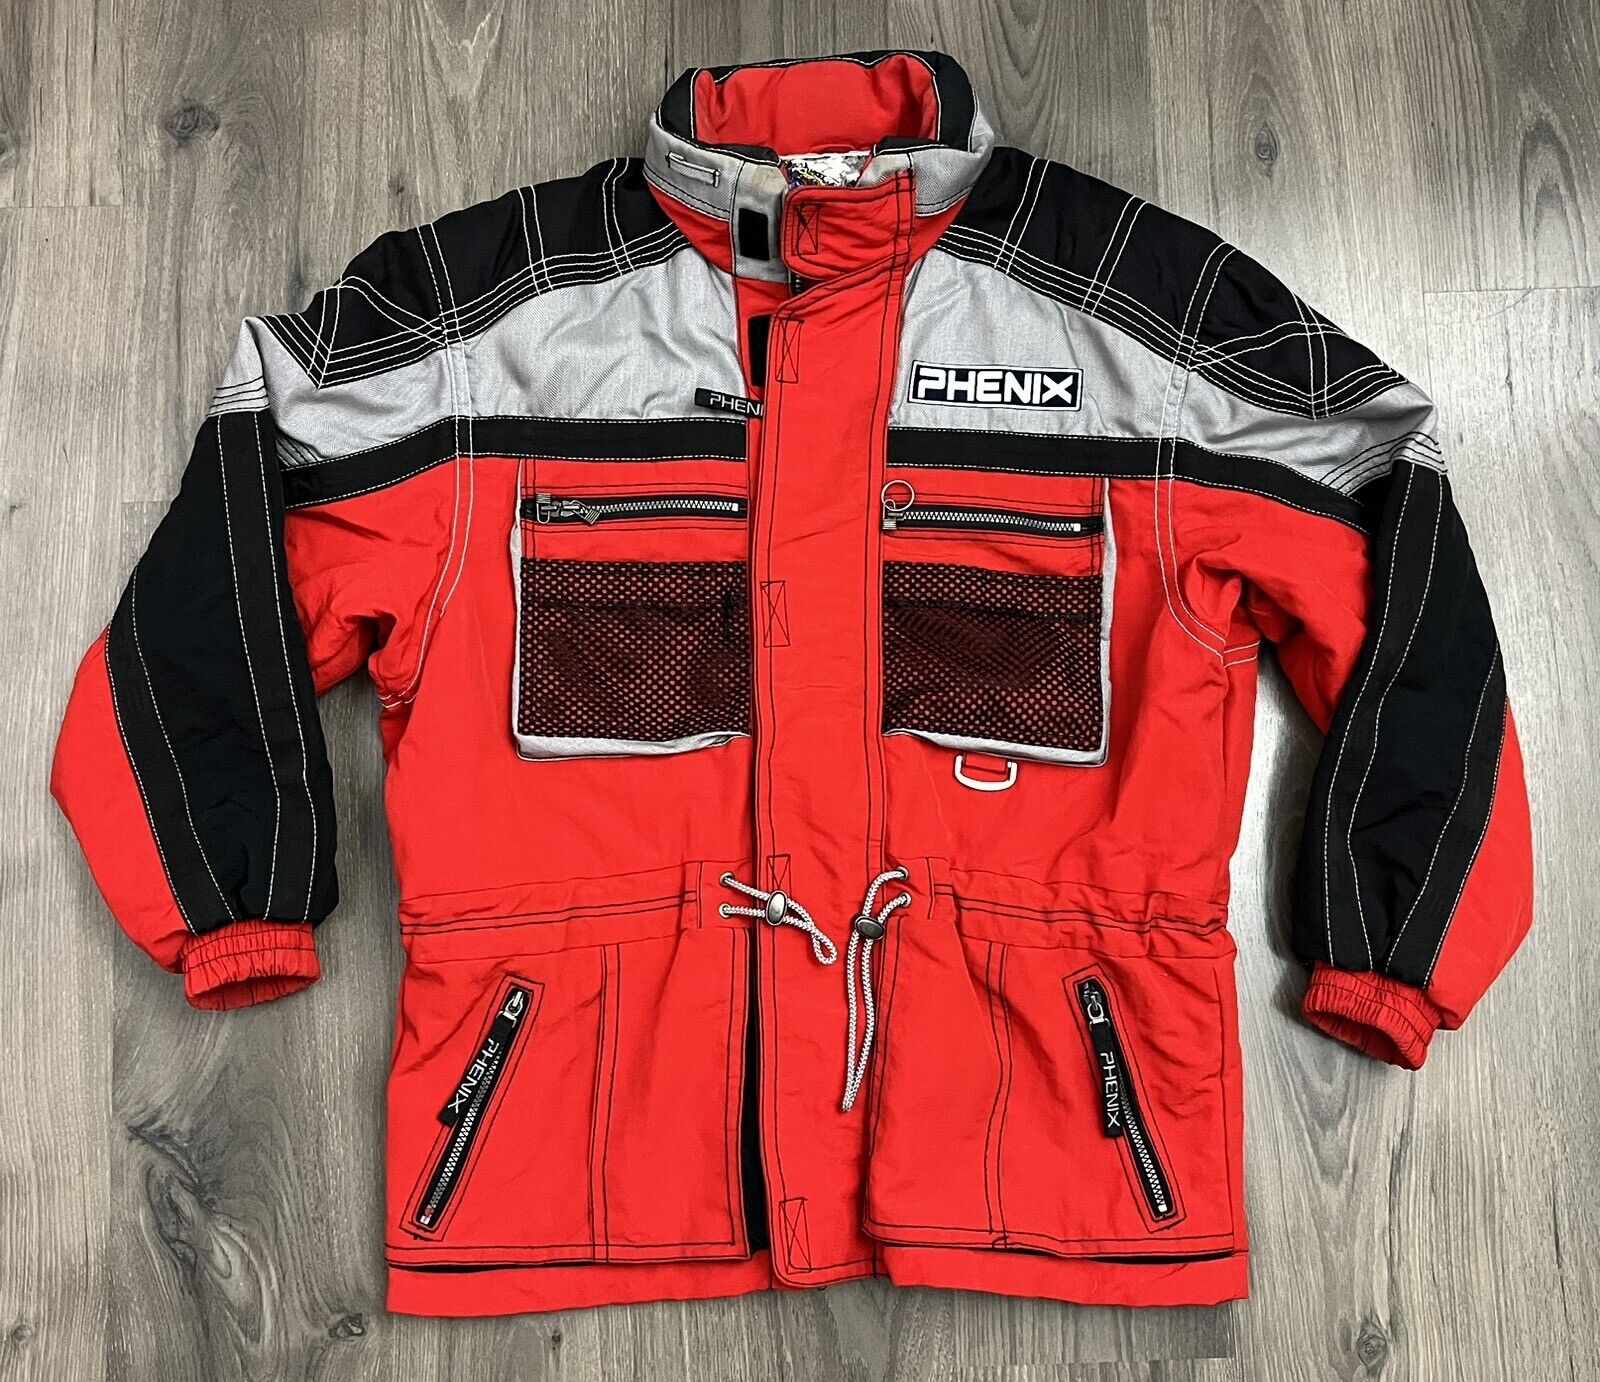 Vintage Phenix Ski Jacket 90s Mens Medium Red Bla… - image 1